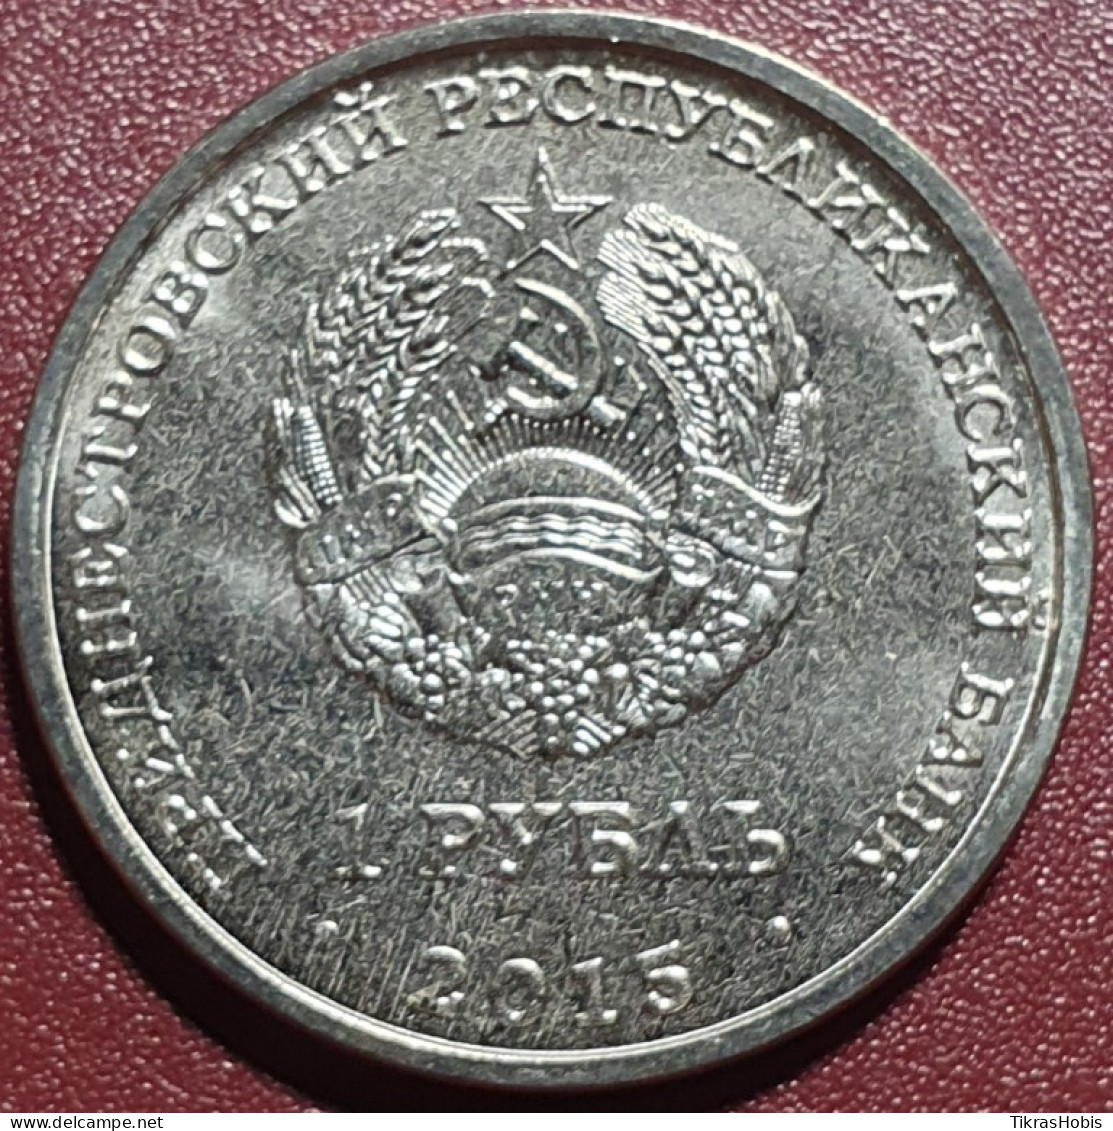 Moldova, Transnistria 1 Ruble, 2015 In The Great Patriotic War 70 UC111 - Moldova